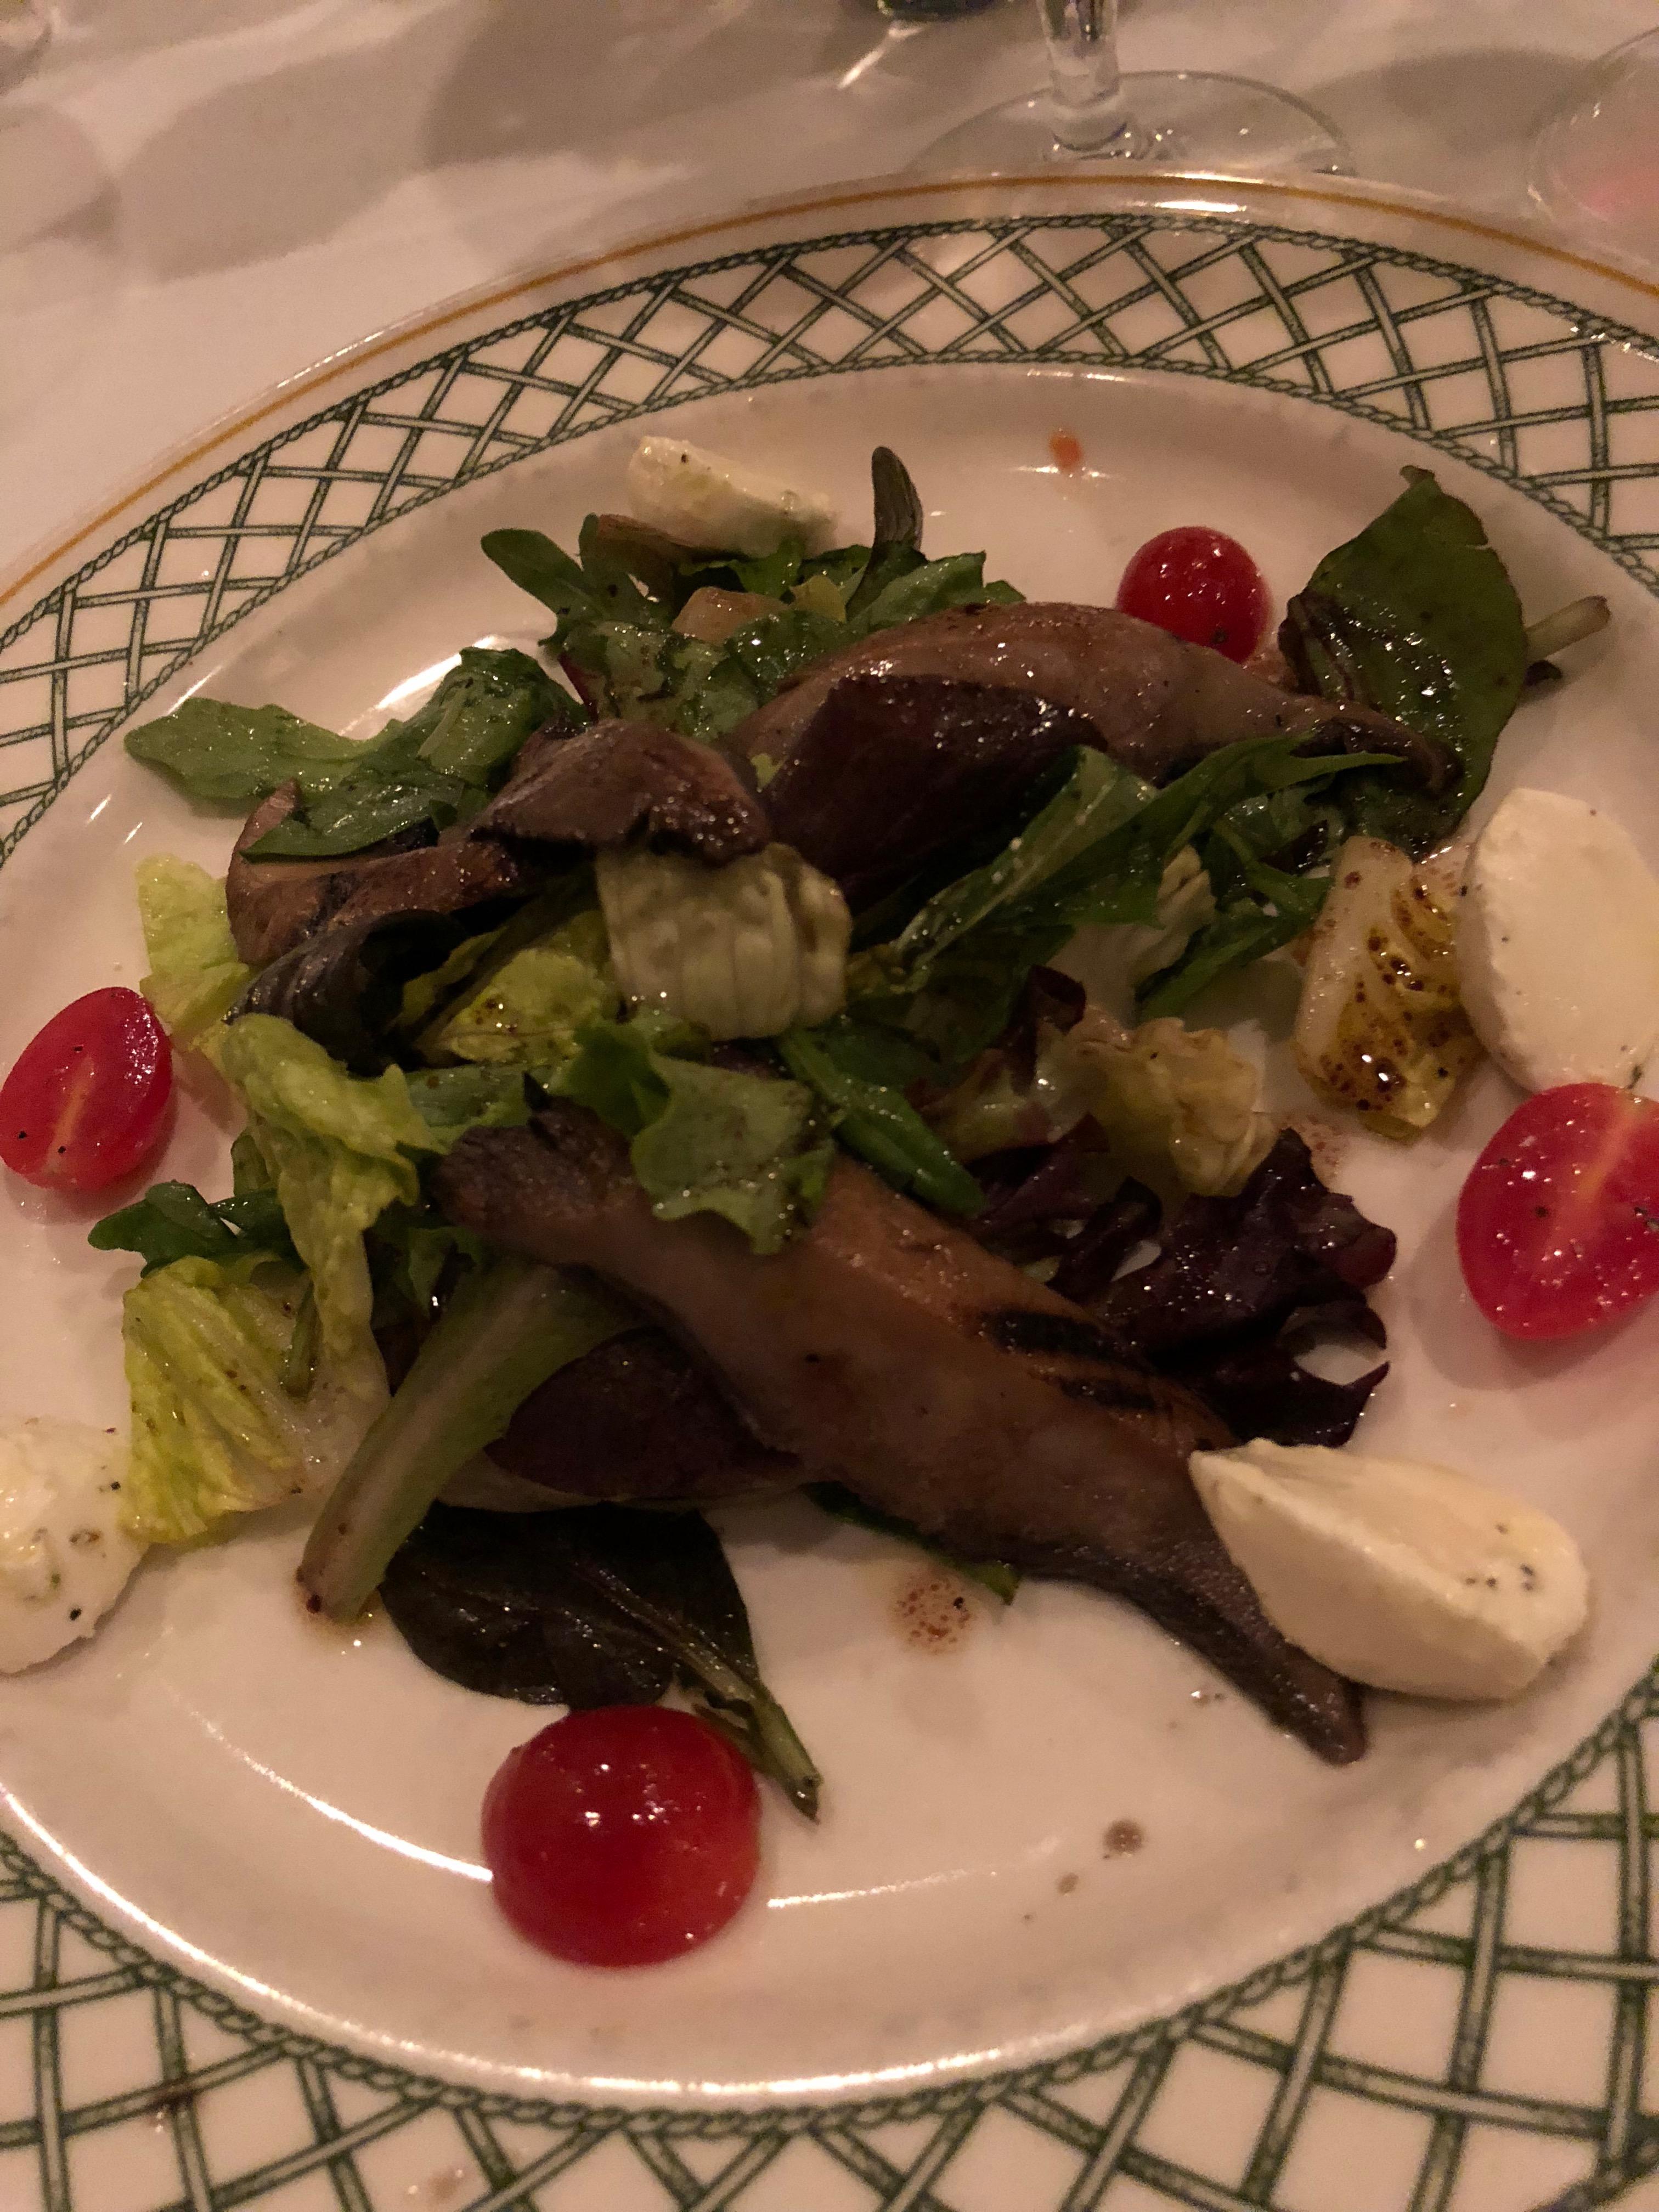 Salad with Portabella